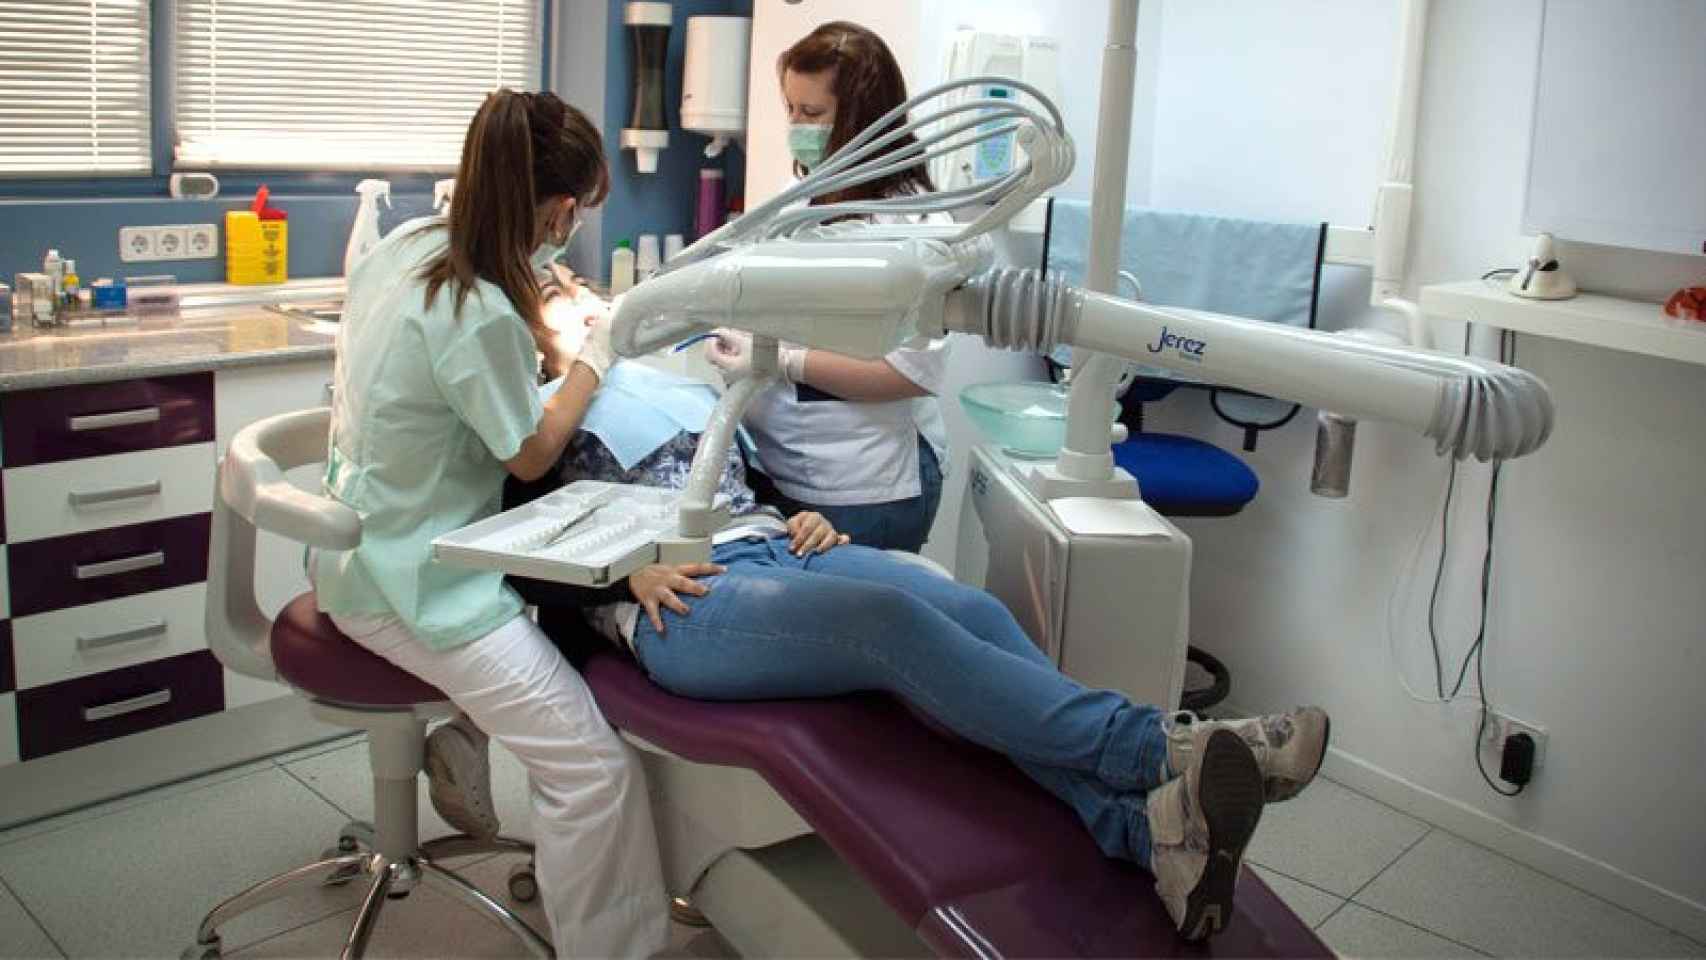 Funnydent pedía a la mujer de la limpieza que lavara el material de ortodoncia en al menos una clínica.